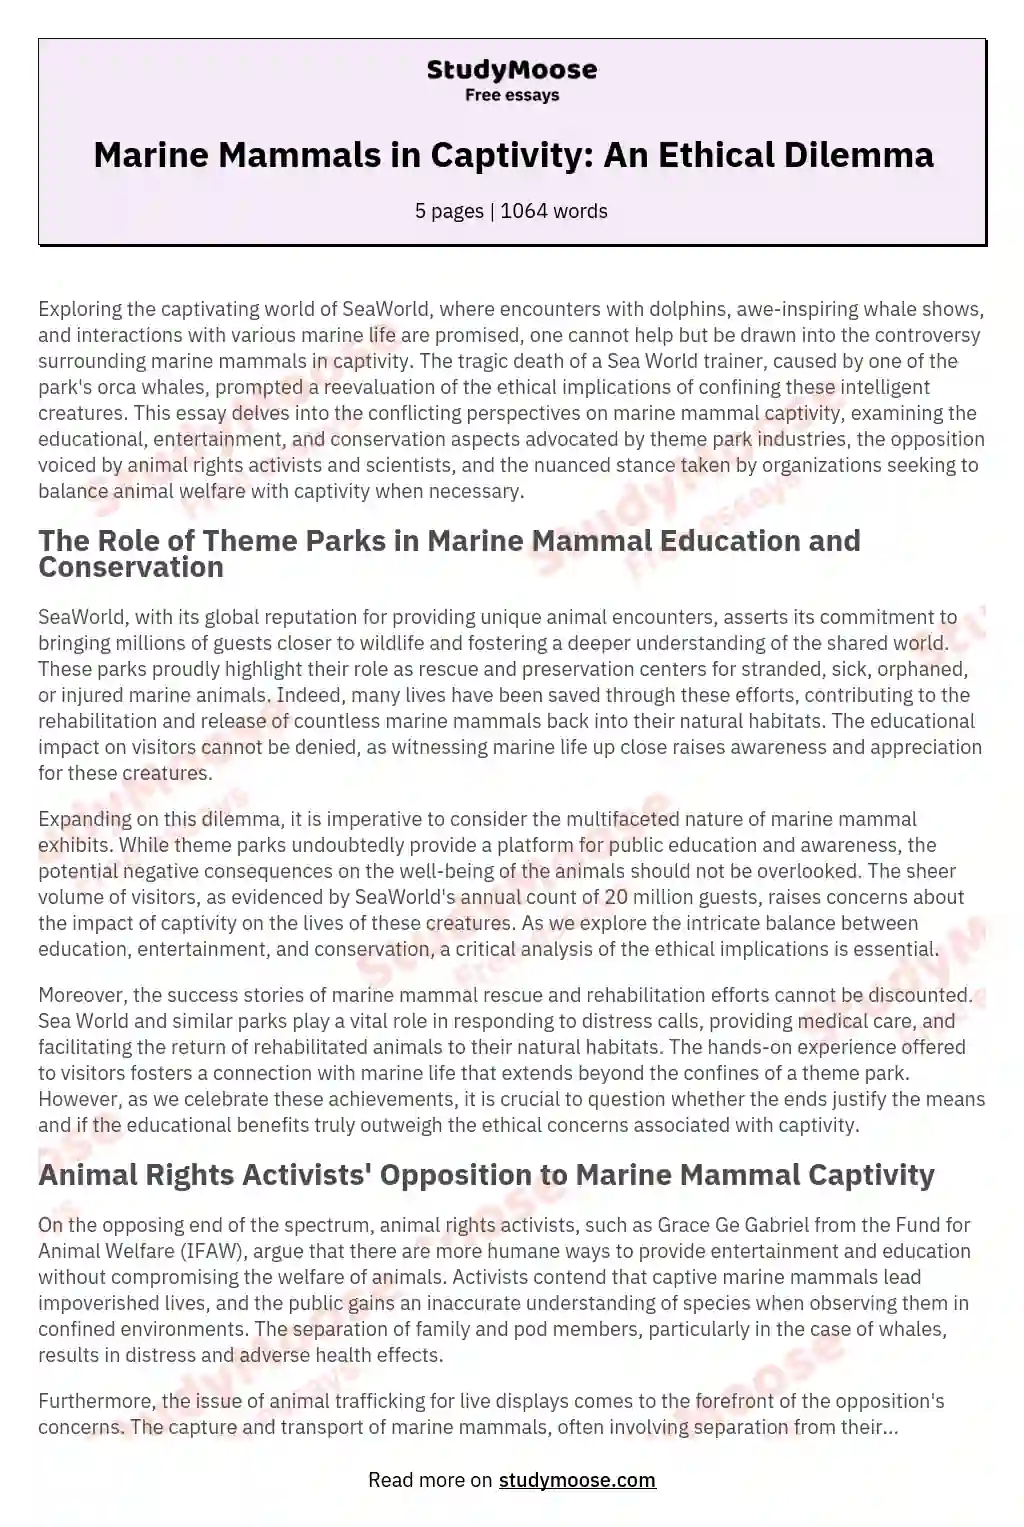 Marine Mammals in Captivity: An Ethical Dilemma essay